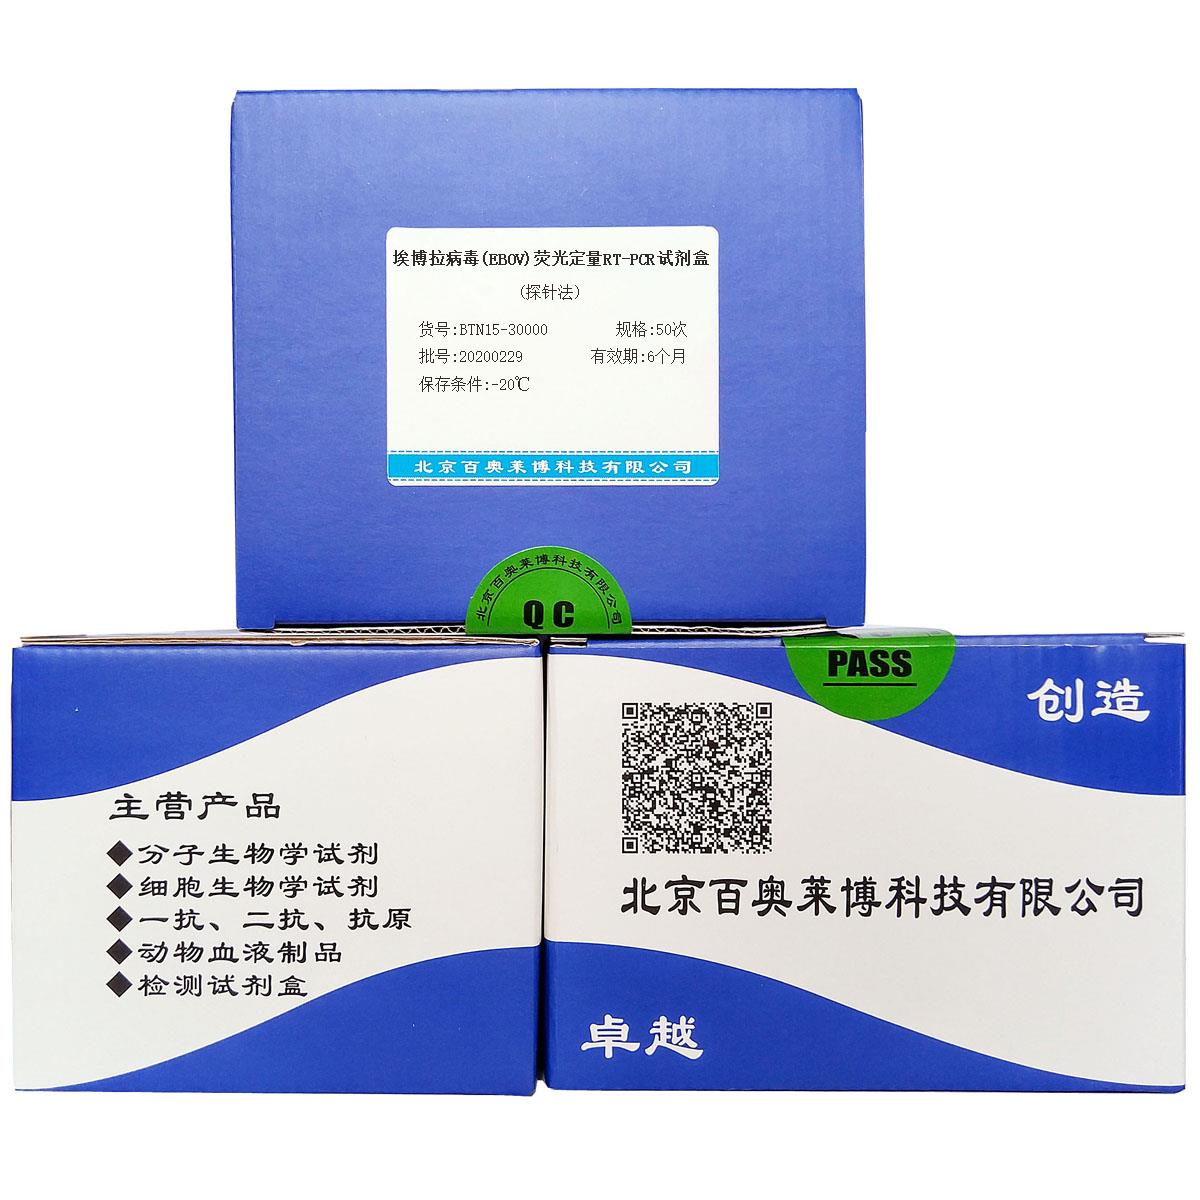 埃博拉病毒(EBOV)荧光定量RT-PCR试剂盒(探针法)